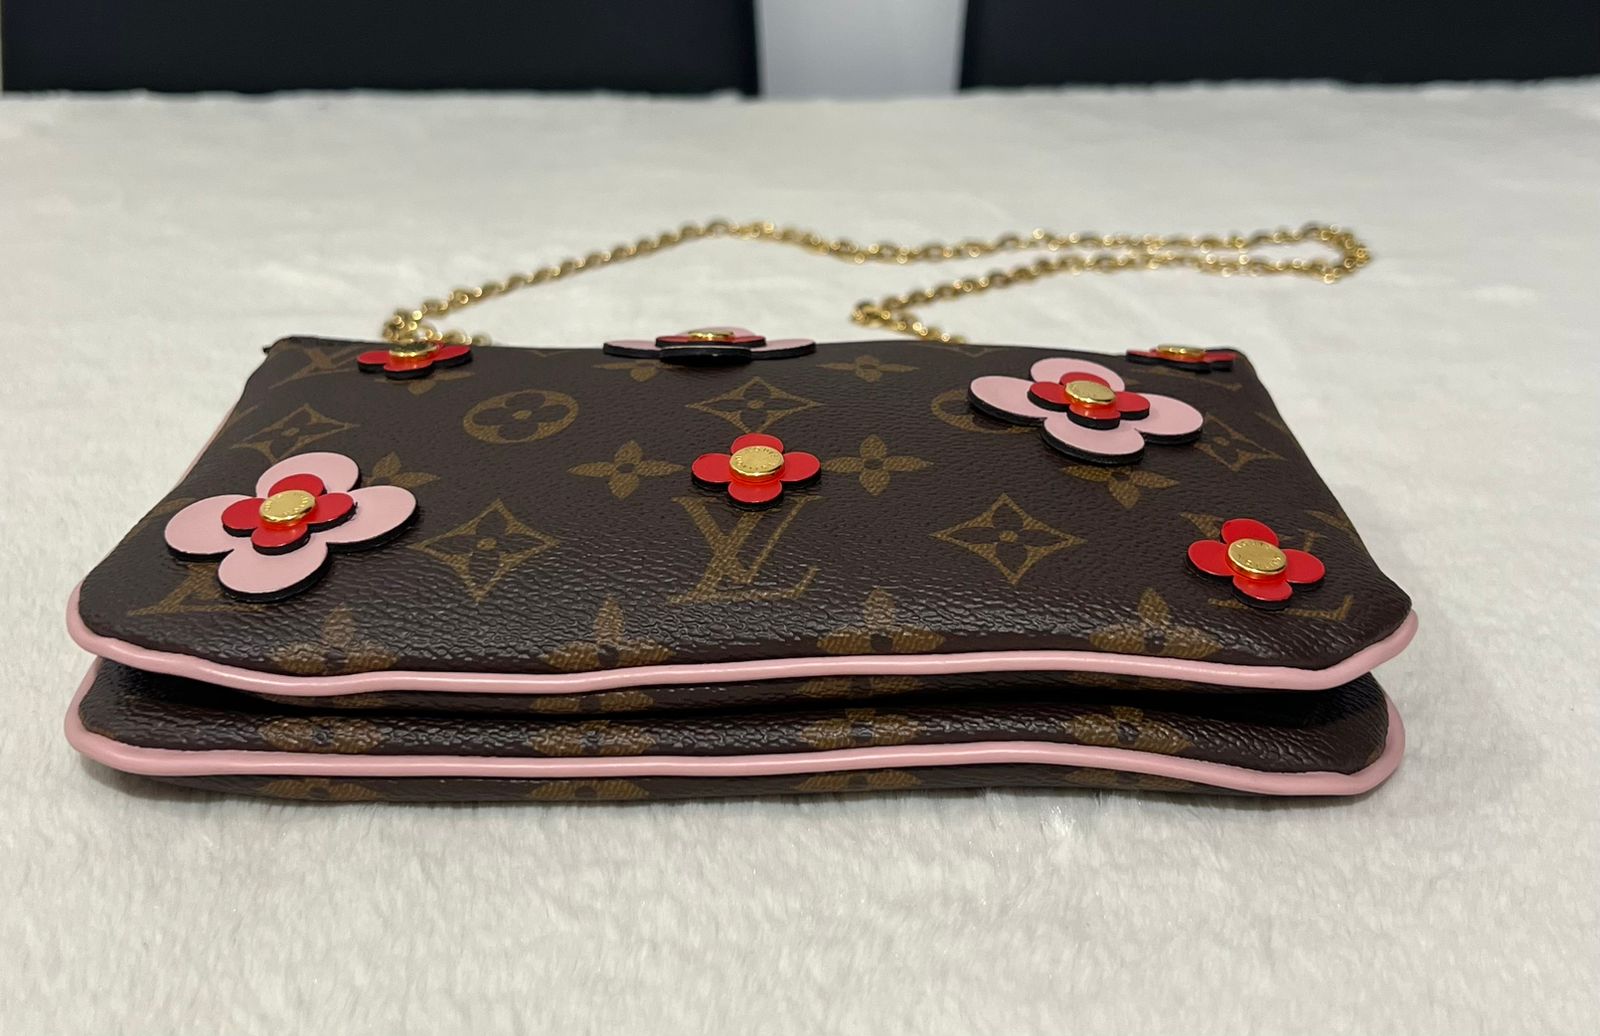 082323 SNEAK PEEK Preloved Louis Vuitton Blooming Flowers Bag